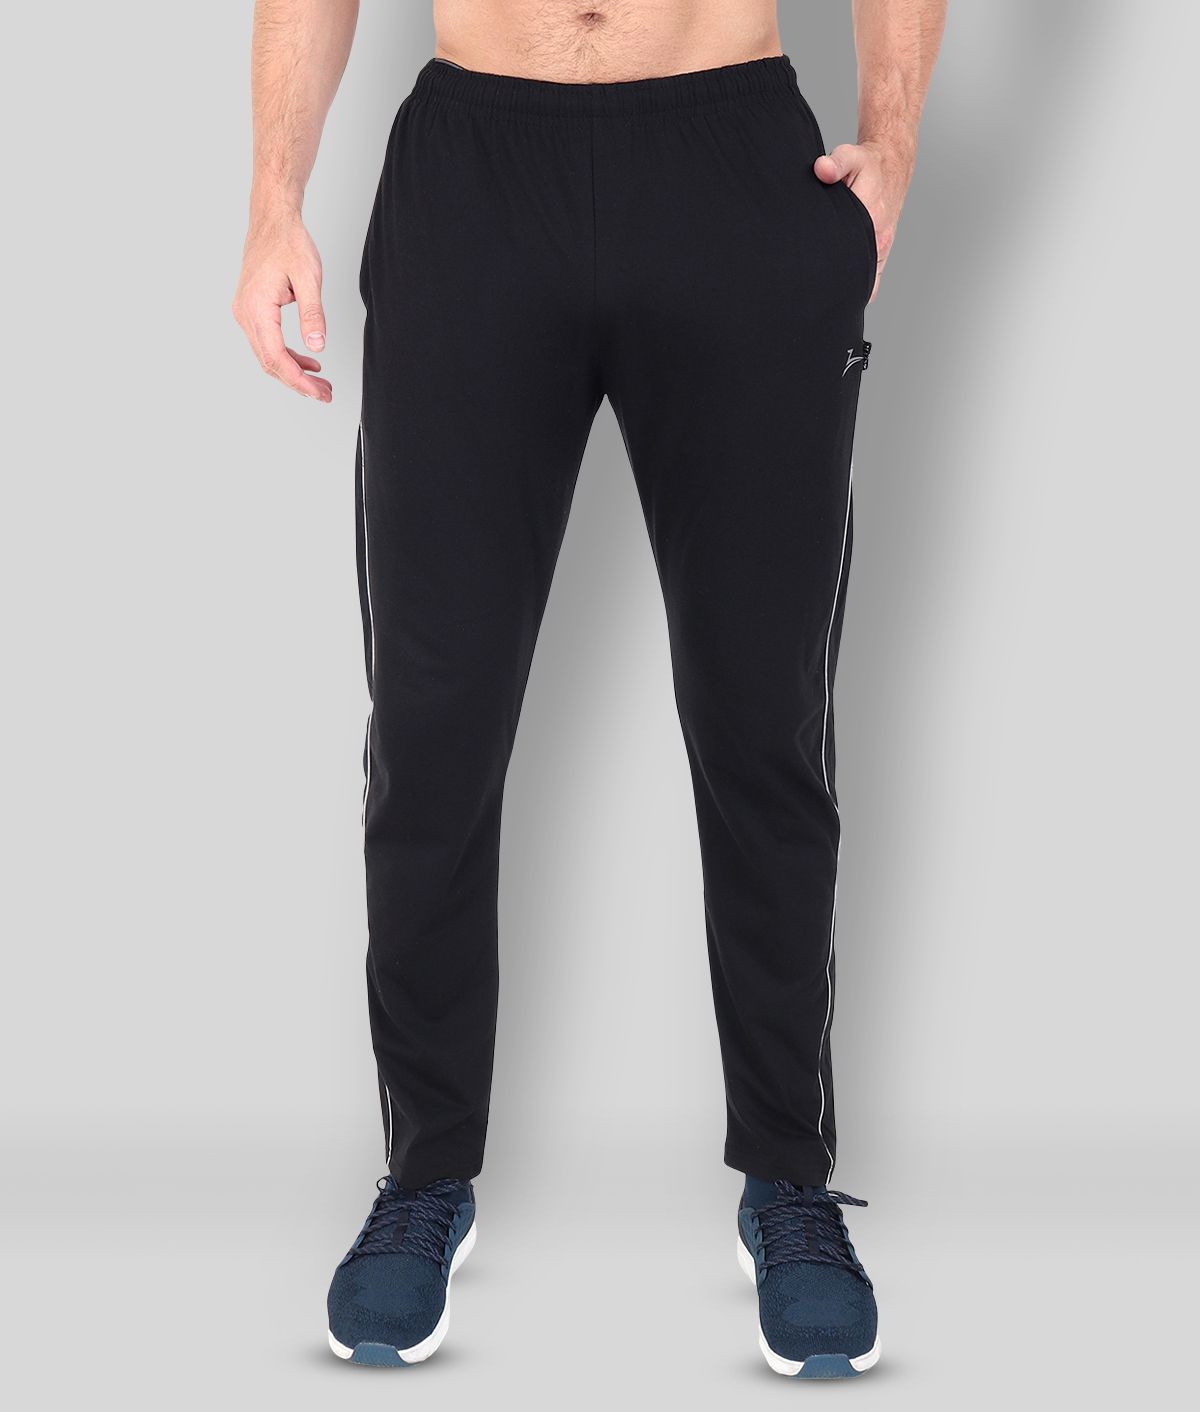 Zeffit - Black Cotton Blend Men's Sports Trackpants ( Pack of 1 )